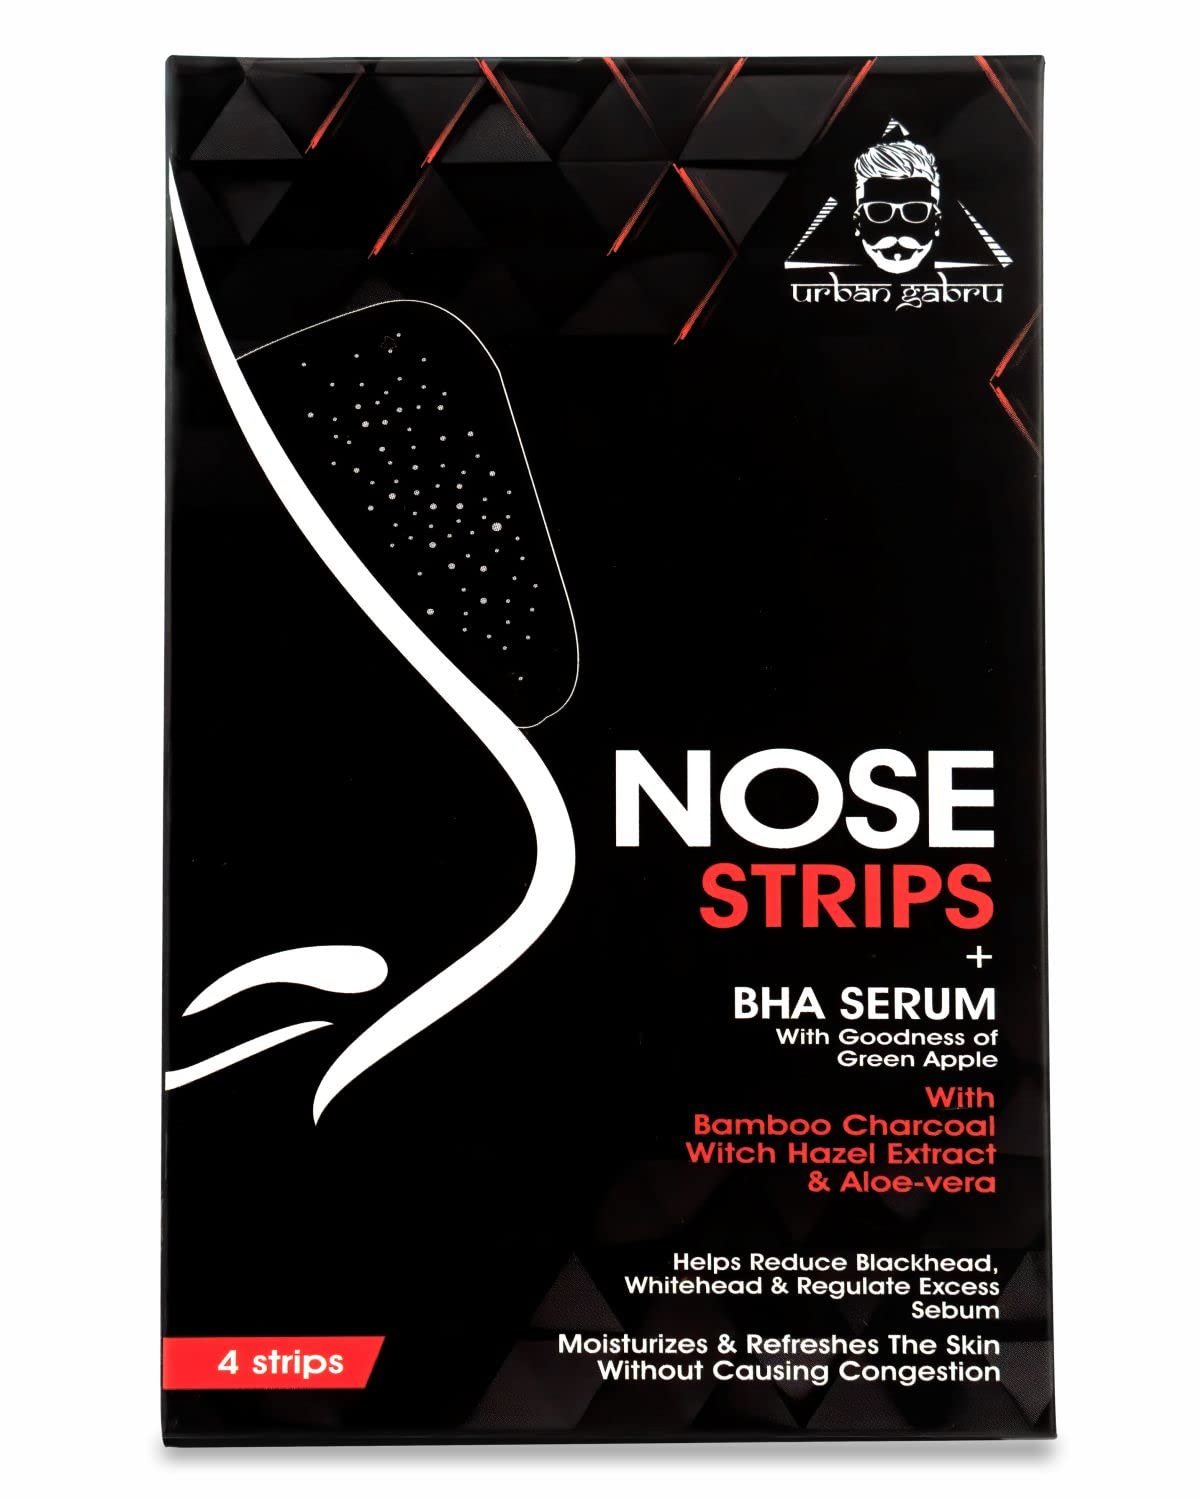 UrbanGabru Nose Strips (4 Strips) BlackWhitehead Remover + BHA Serum to Treat Pores